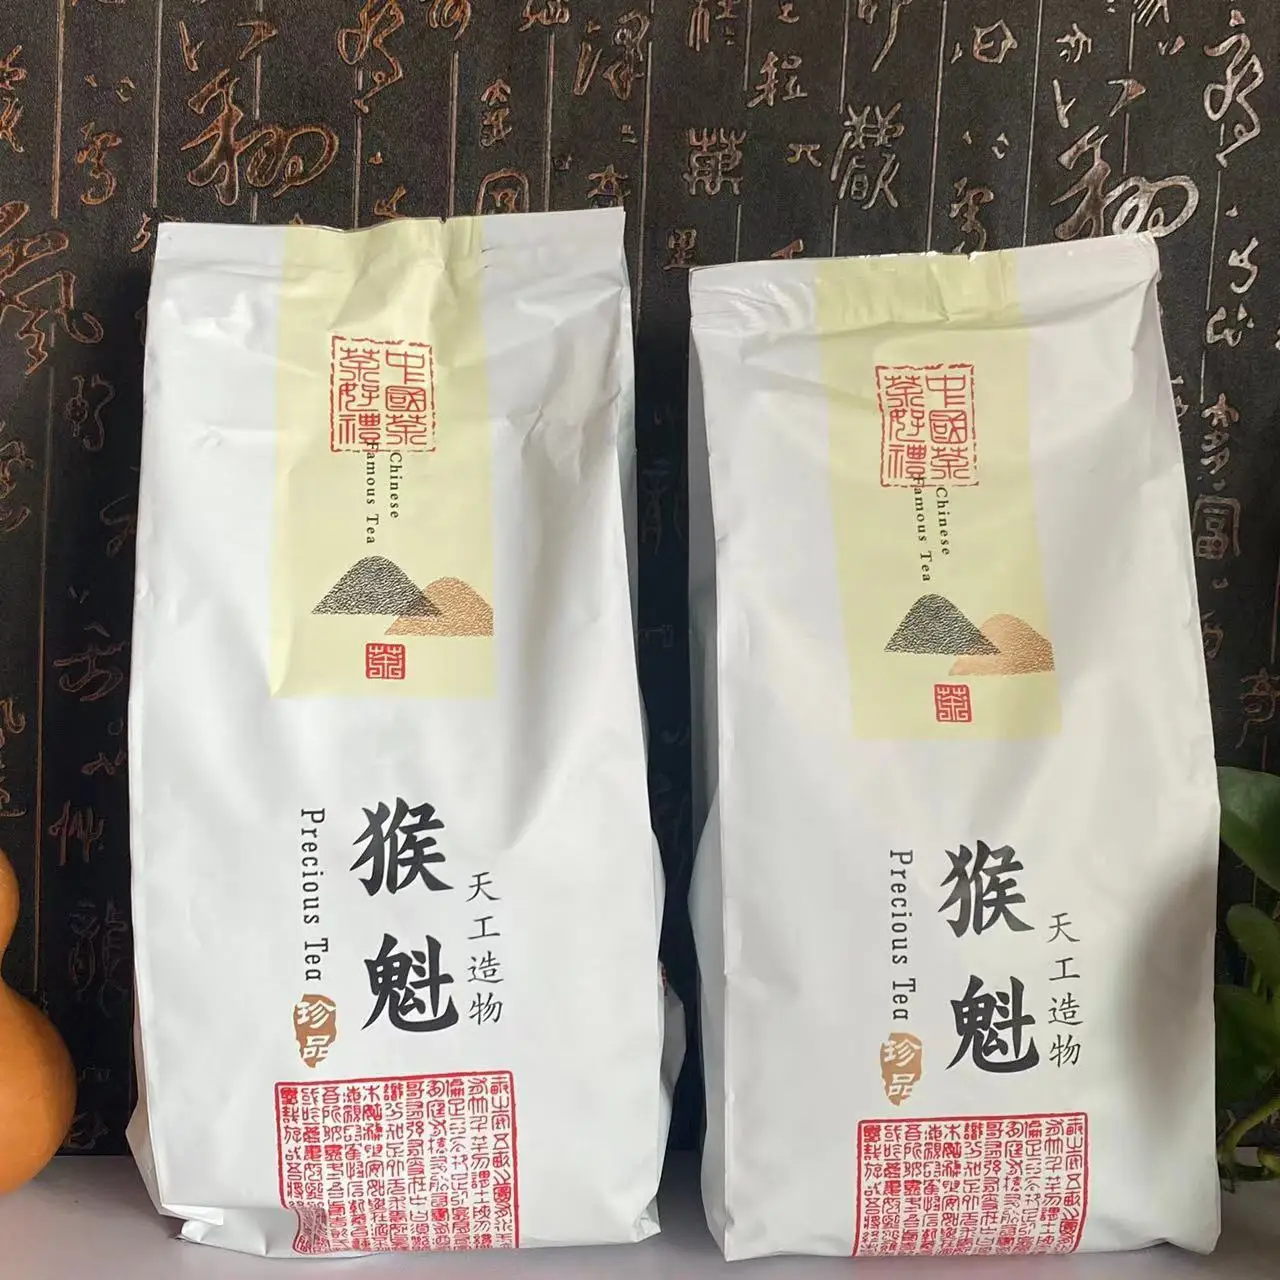 500 г Пакетик чая Anhui Taiping Houkui на молнии A + + + TaipingHoukui Green tea Самоуплотняющийся пакетик Monkey Kui Tea Set, Пригодный для Вторичной переработки Упаковочный пакет